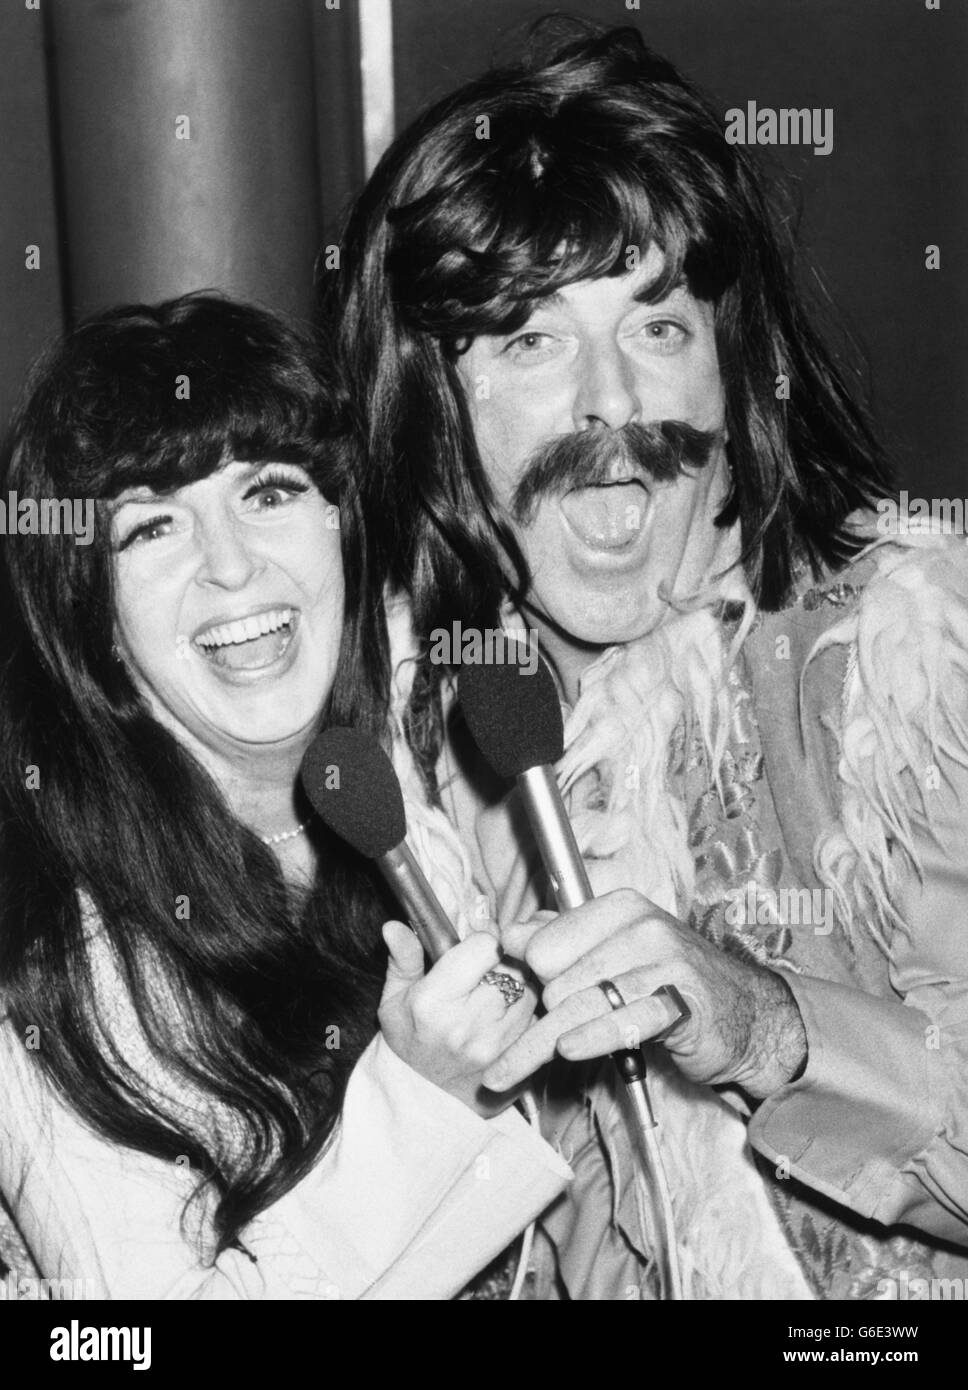 Die TV-Moderatoren Terry Wogan und Gloria Hunniford kleiden sich als Sonny und Cher für eine Wiedergabe ihres Hits I Got You Babe aus dem Jahr 1965 in Aid of Children in Need. Stockfoto